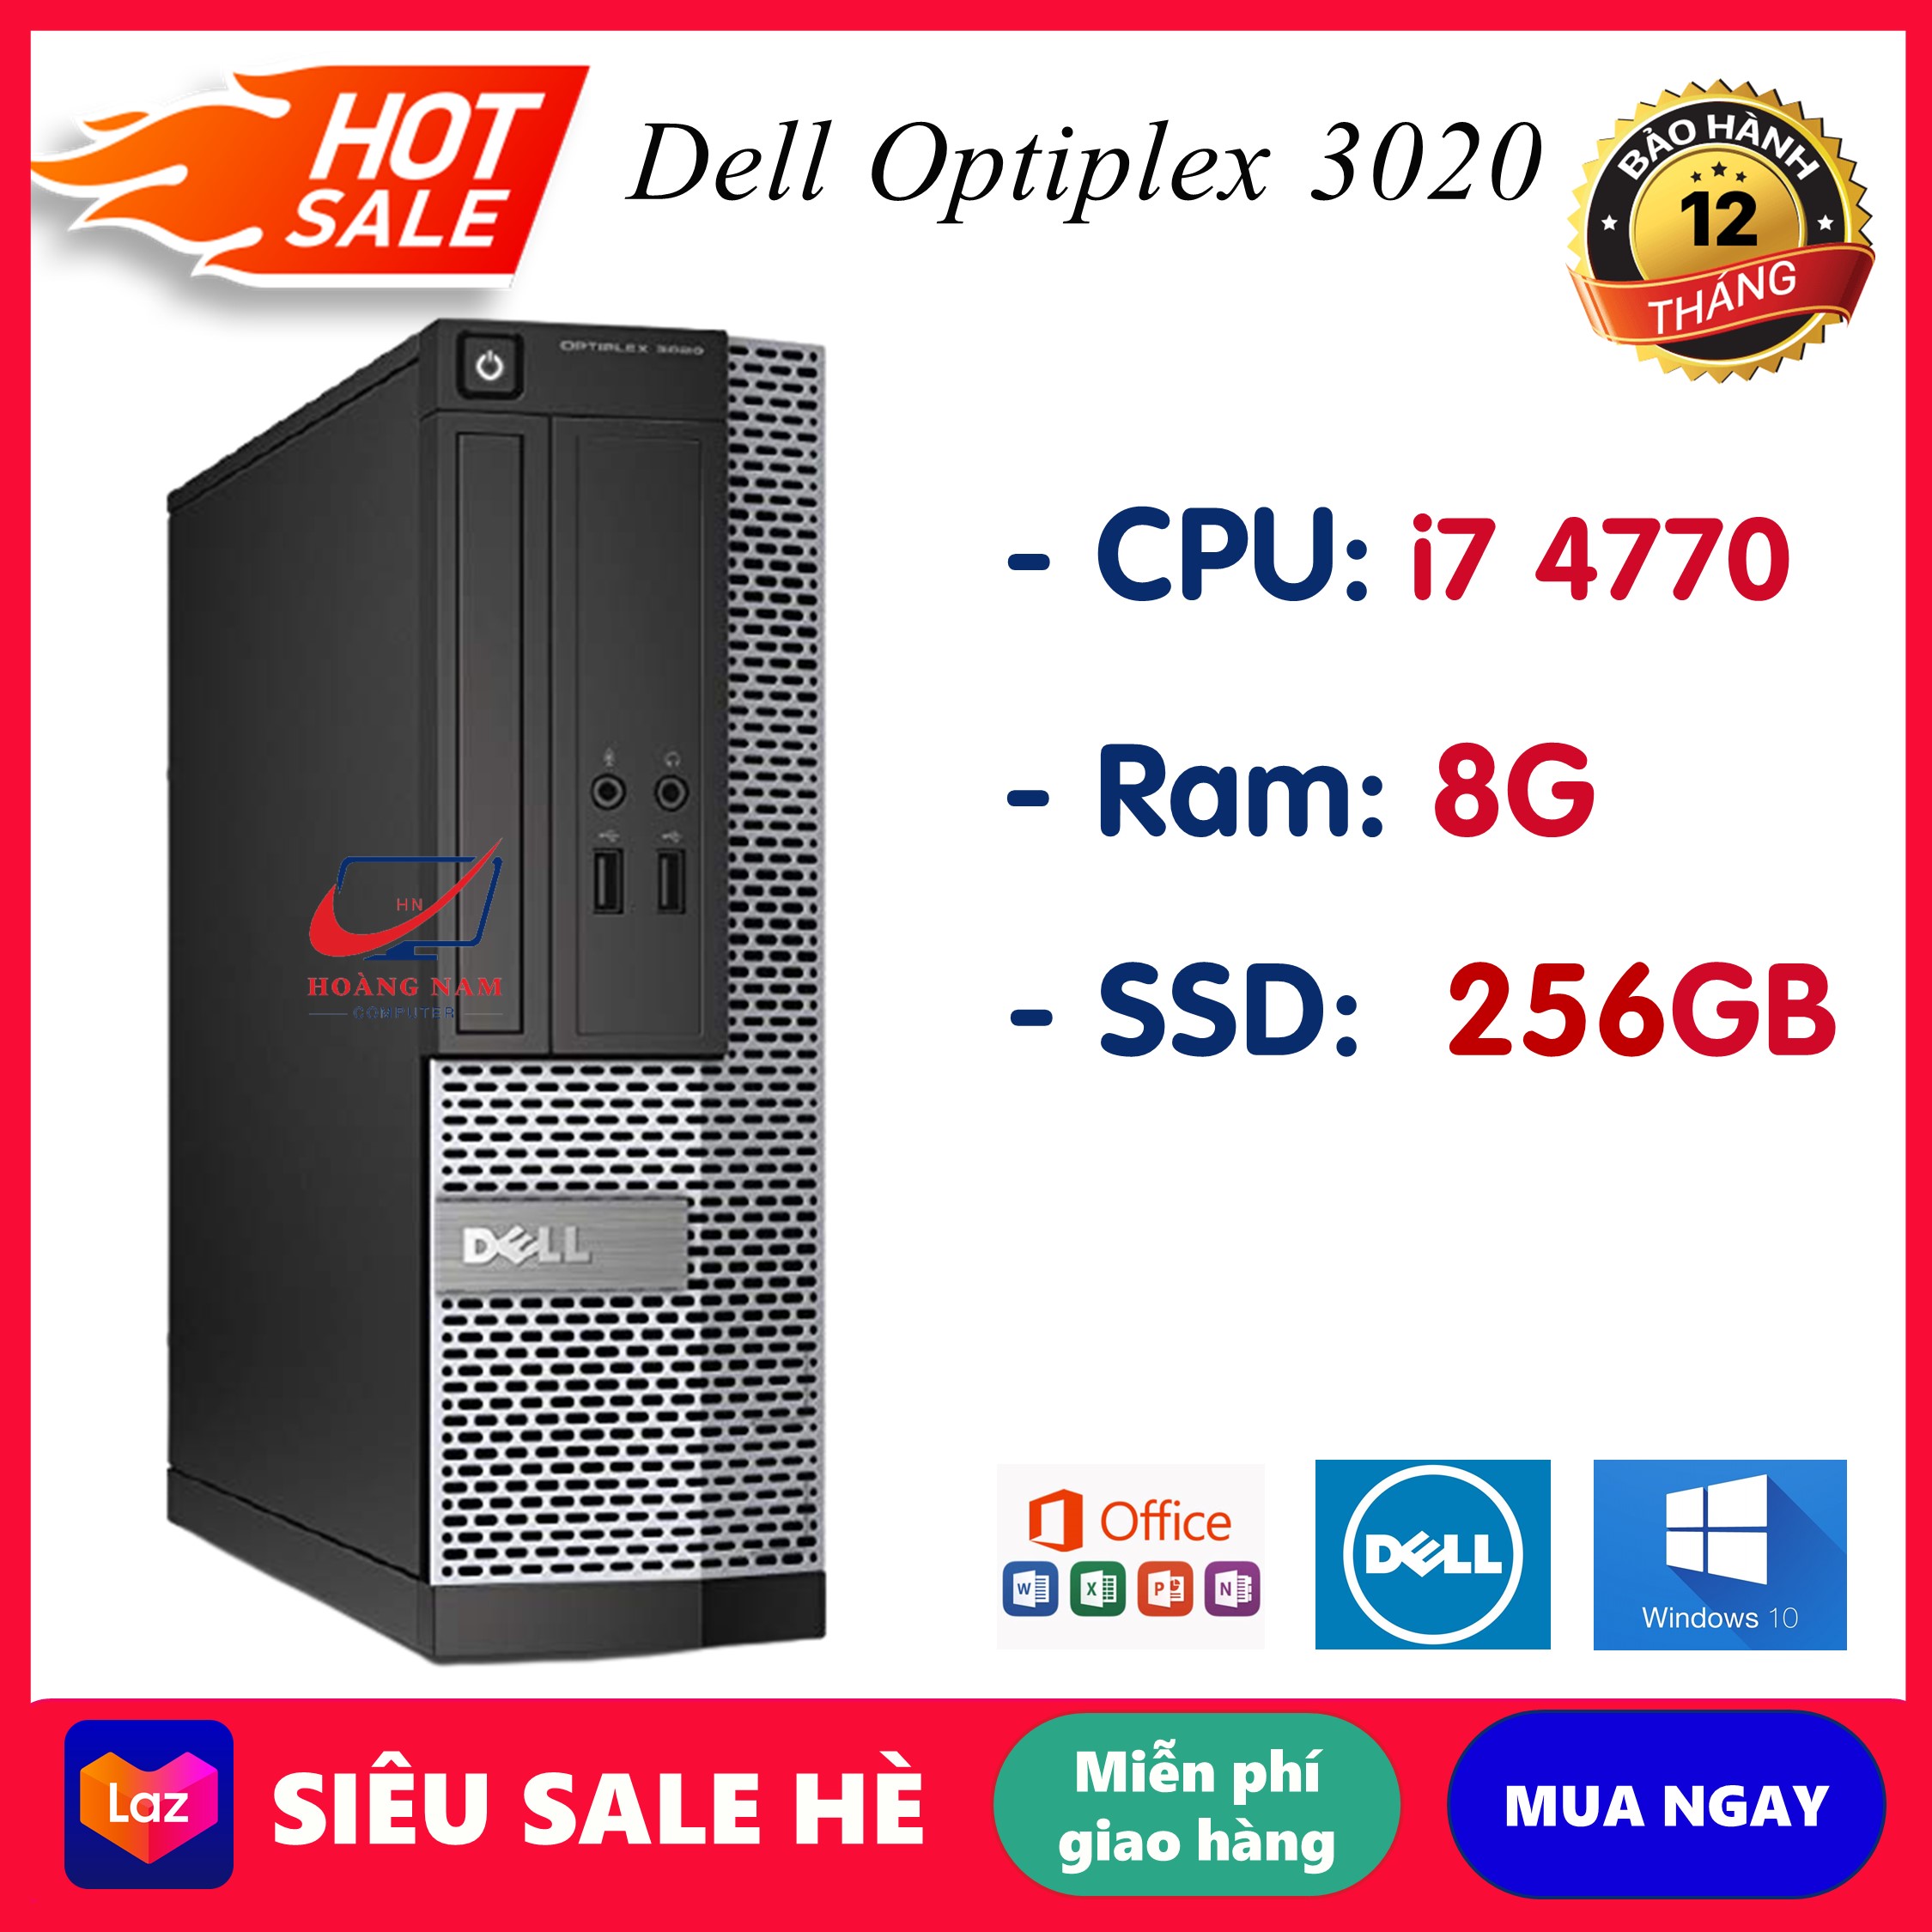 Case máy tính để bàn đồng bộ Dell Optiplex 3020 Core i7 4770/Ram 8GB/SSD 256GB, máy văn phòng cấu hình...